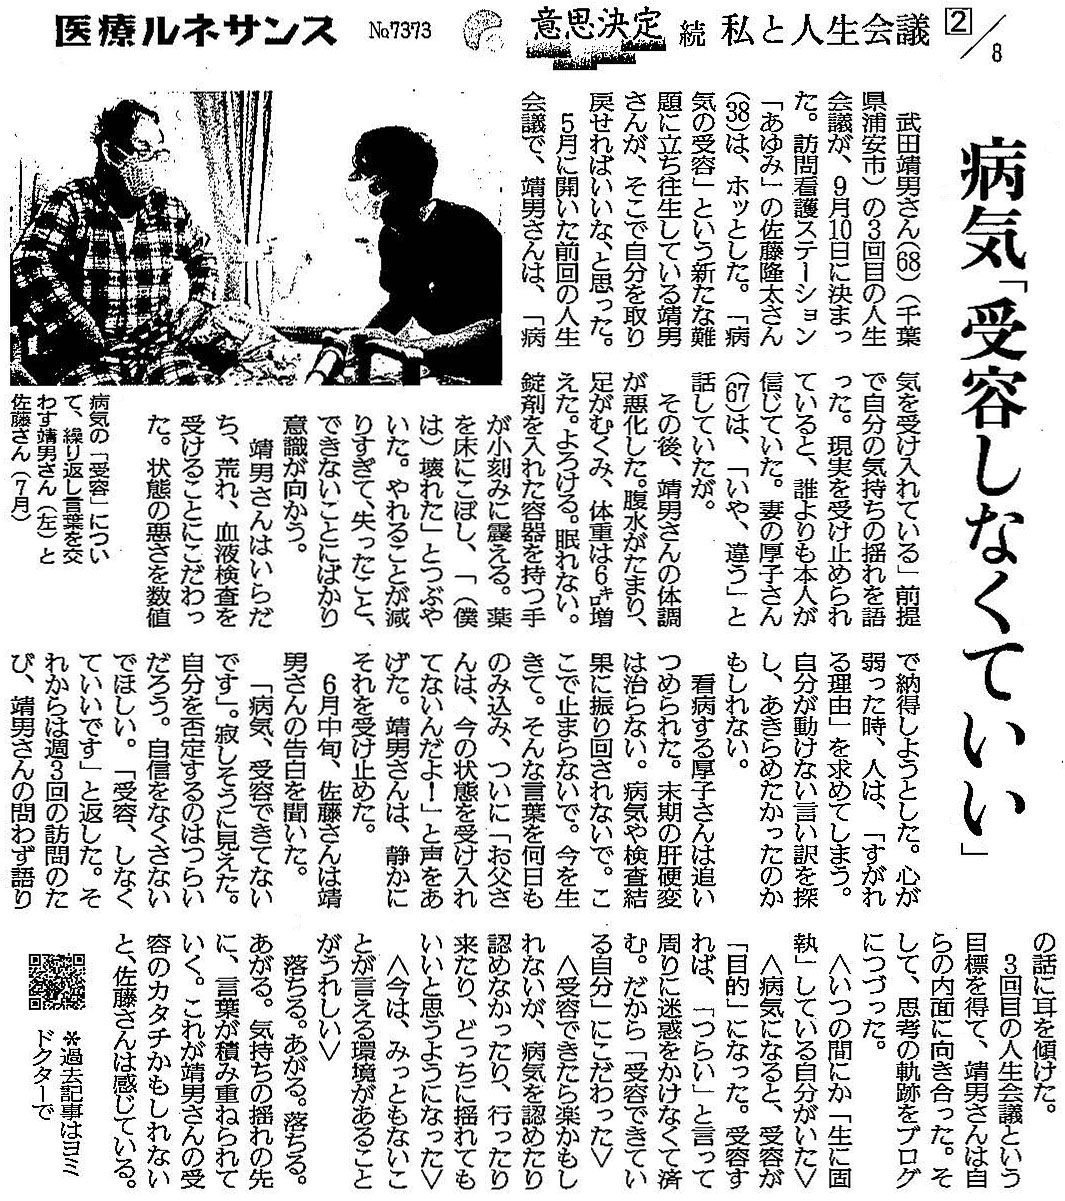 読売新聞 2020年9月24日掲載記事